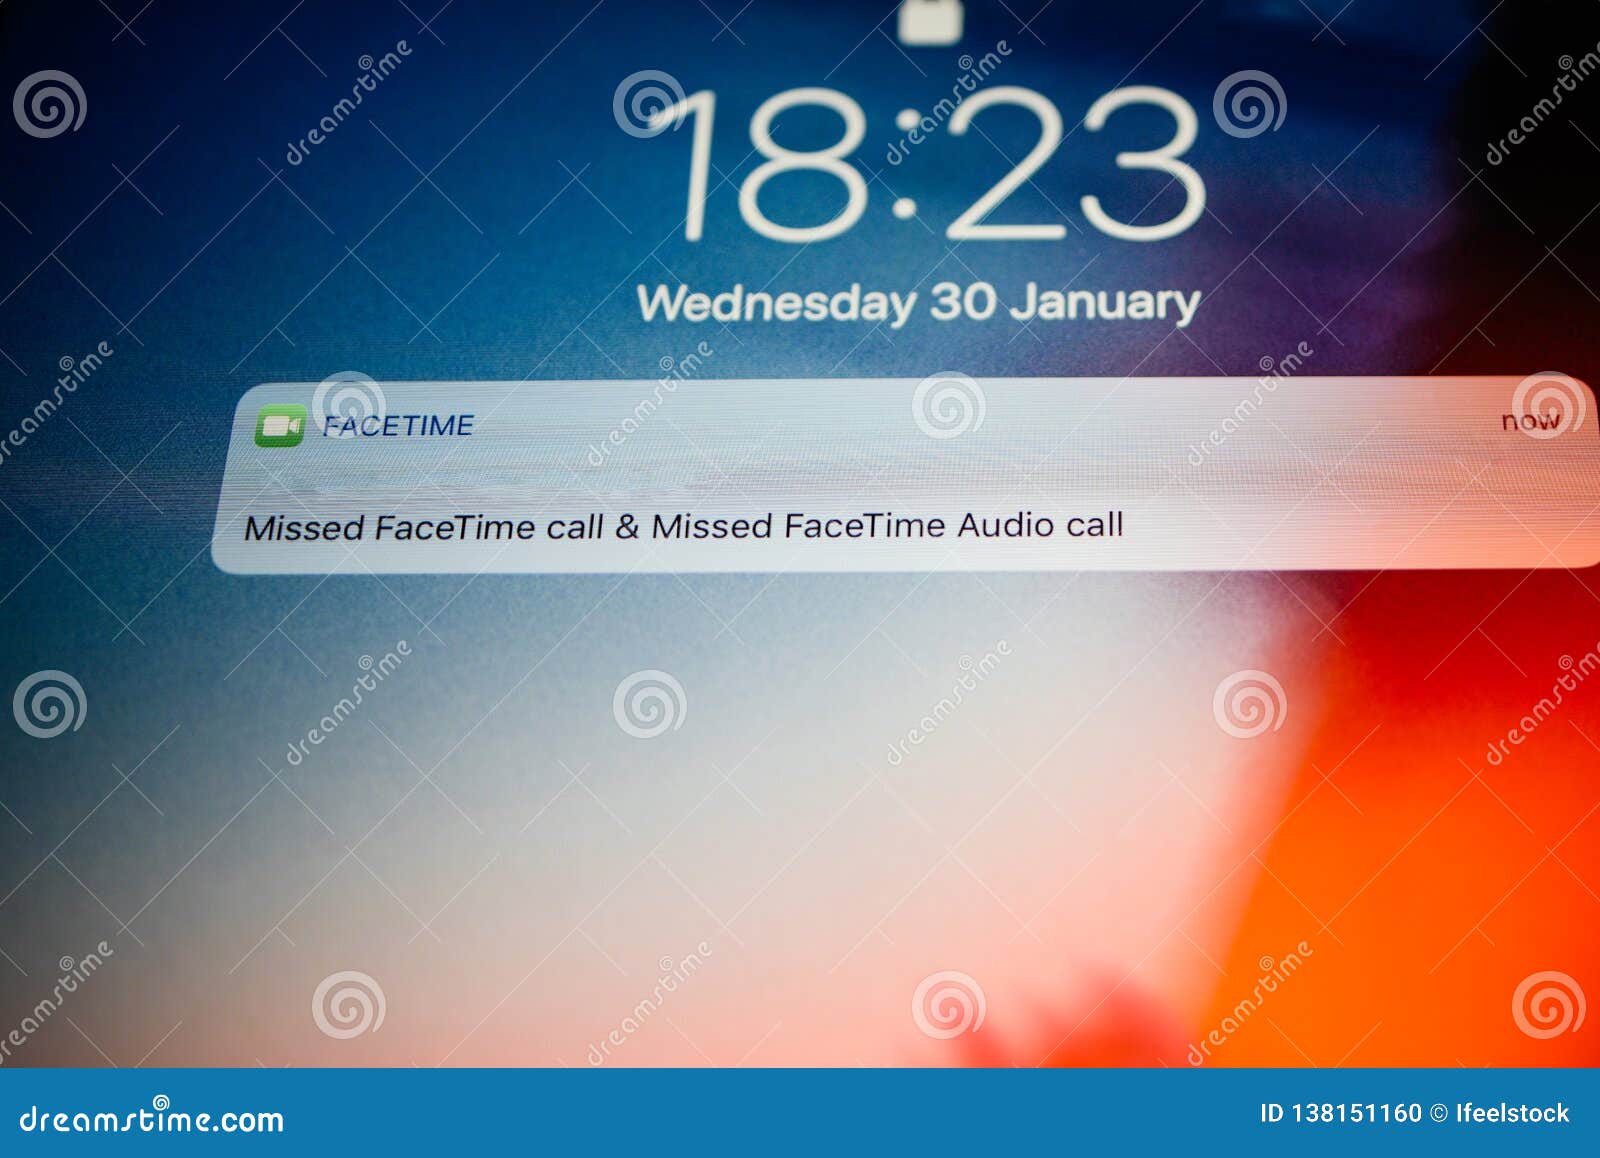 iphone missed call alert app